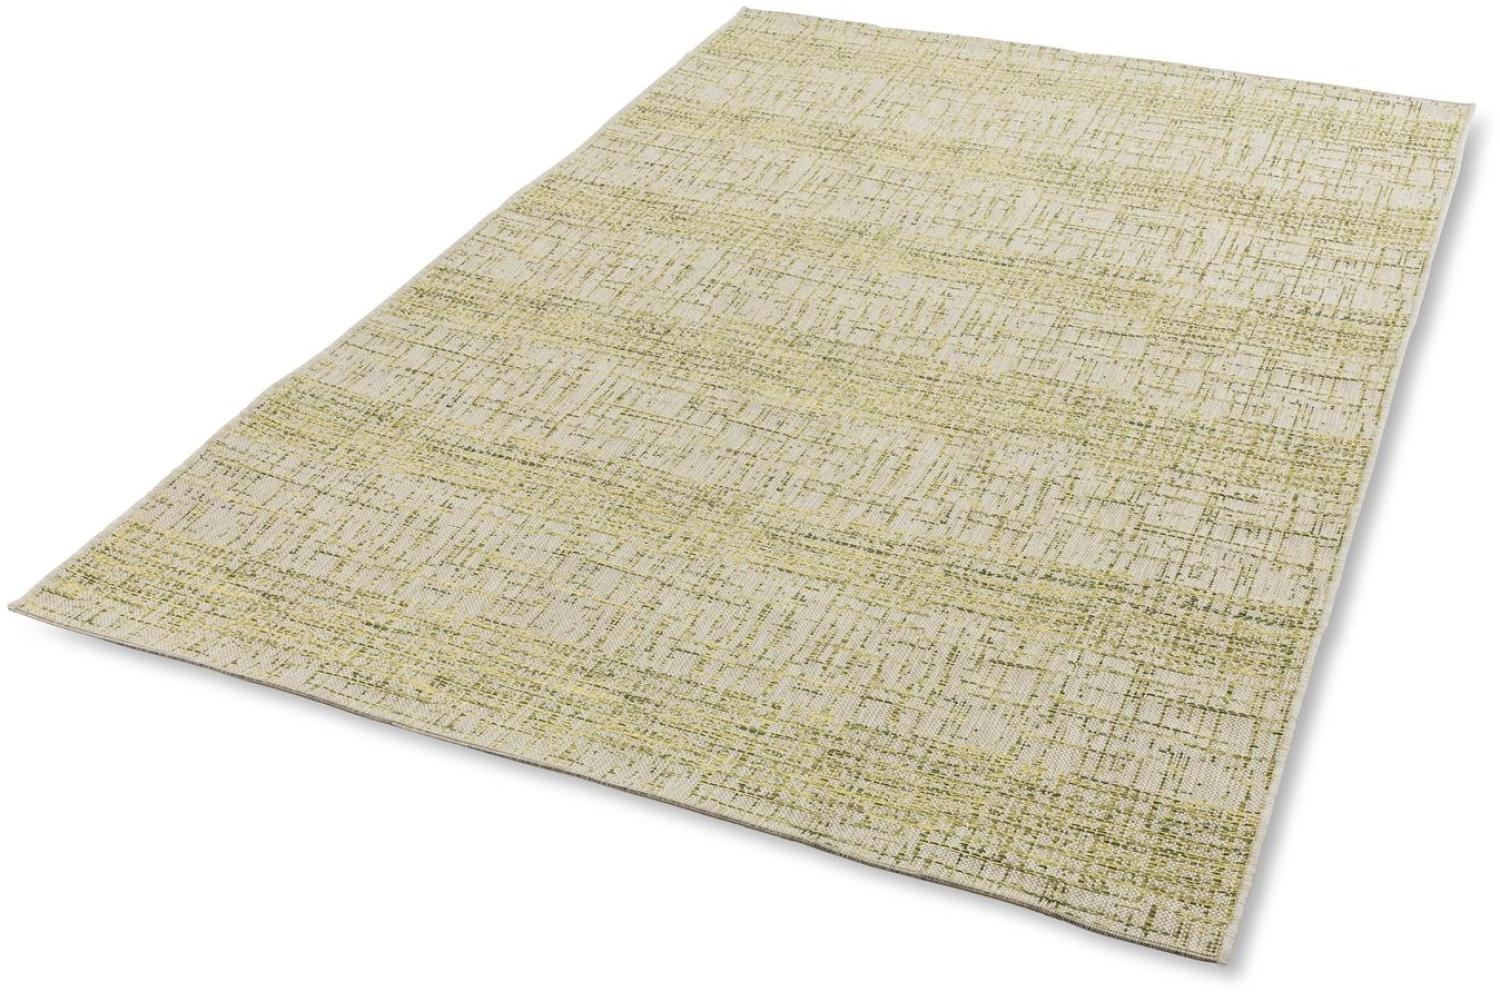 Teppich in grün aus 100% Polypropylen - 290x200x0,5cm (LxBxH) Bild 1